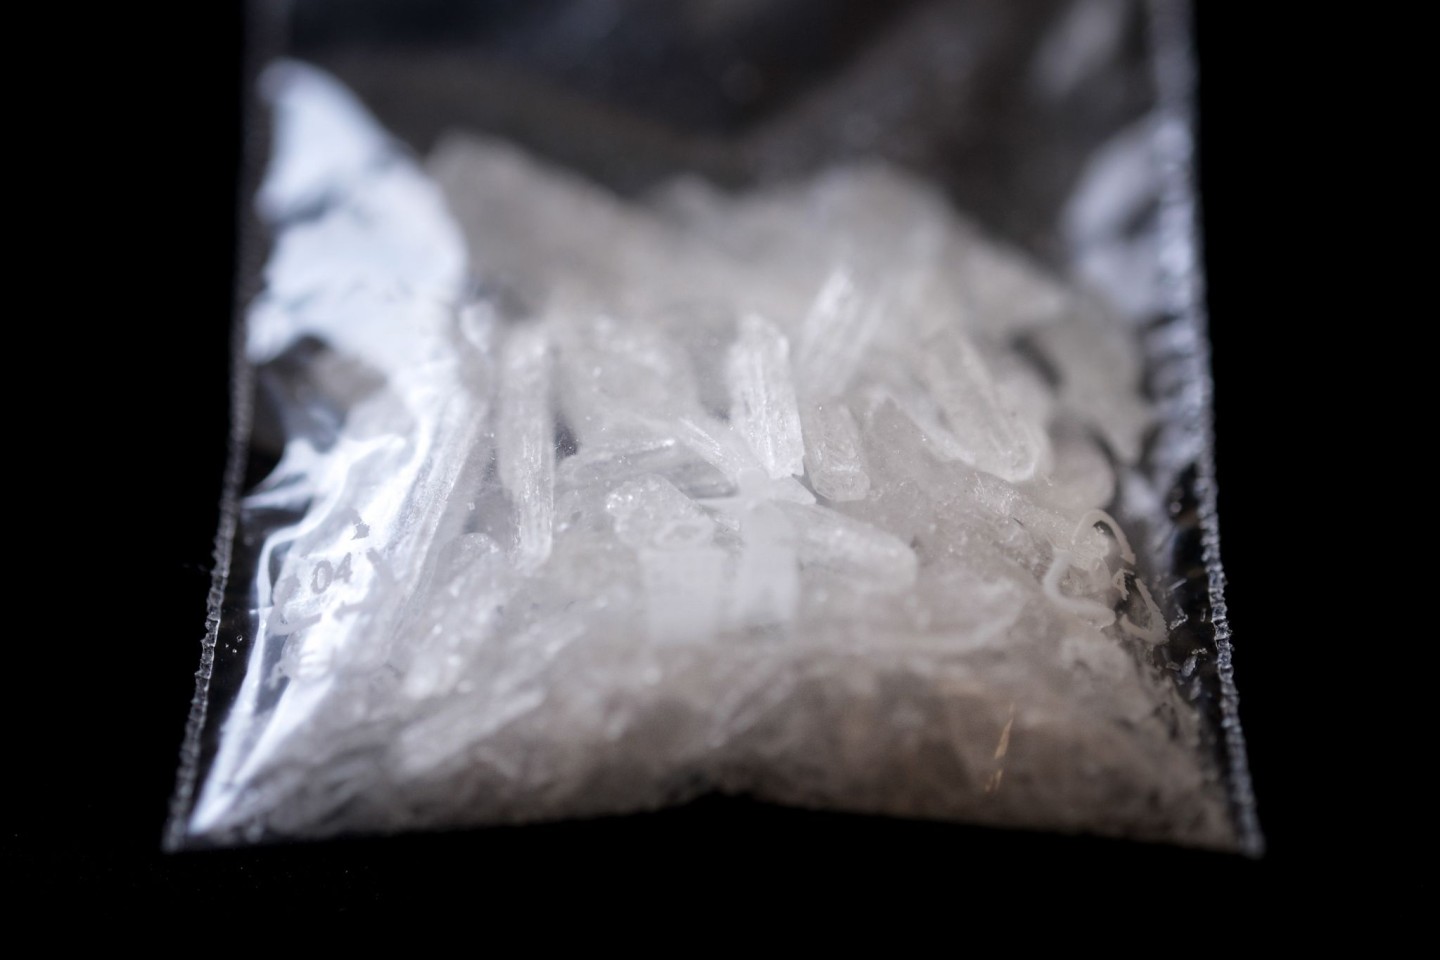 Das synthetisch hergestellte Crystal Meth bezeichnet eine Kristallform von Methamphetamin, was wiederum eine Abwandlung des Aufputschmittels Amphetamin ist.